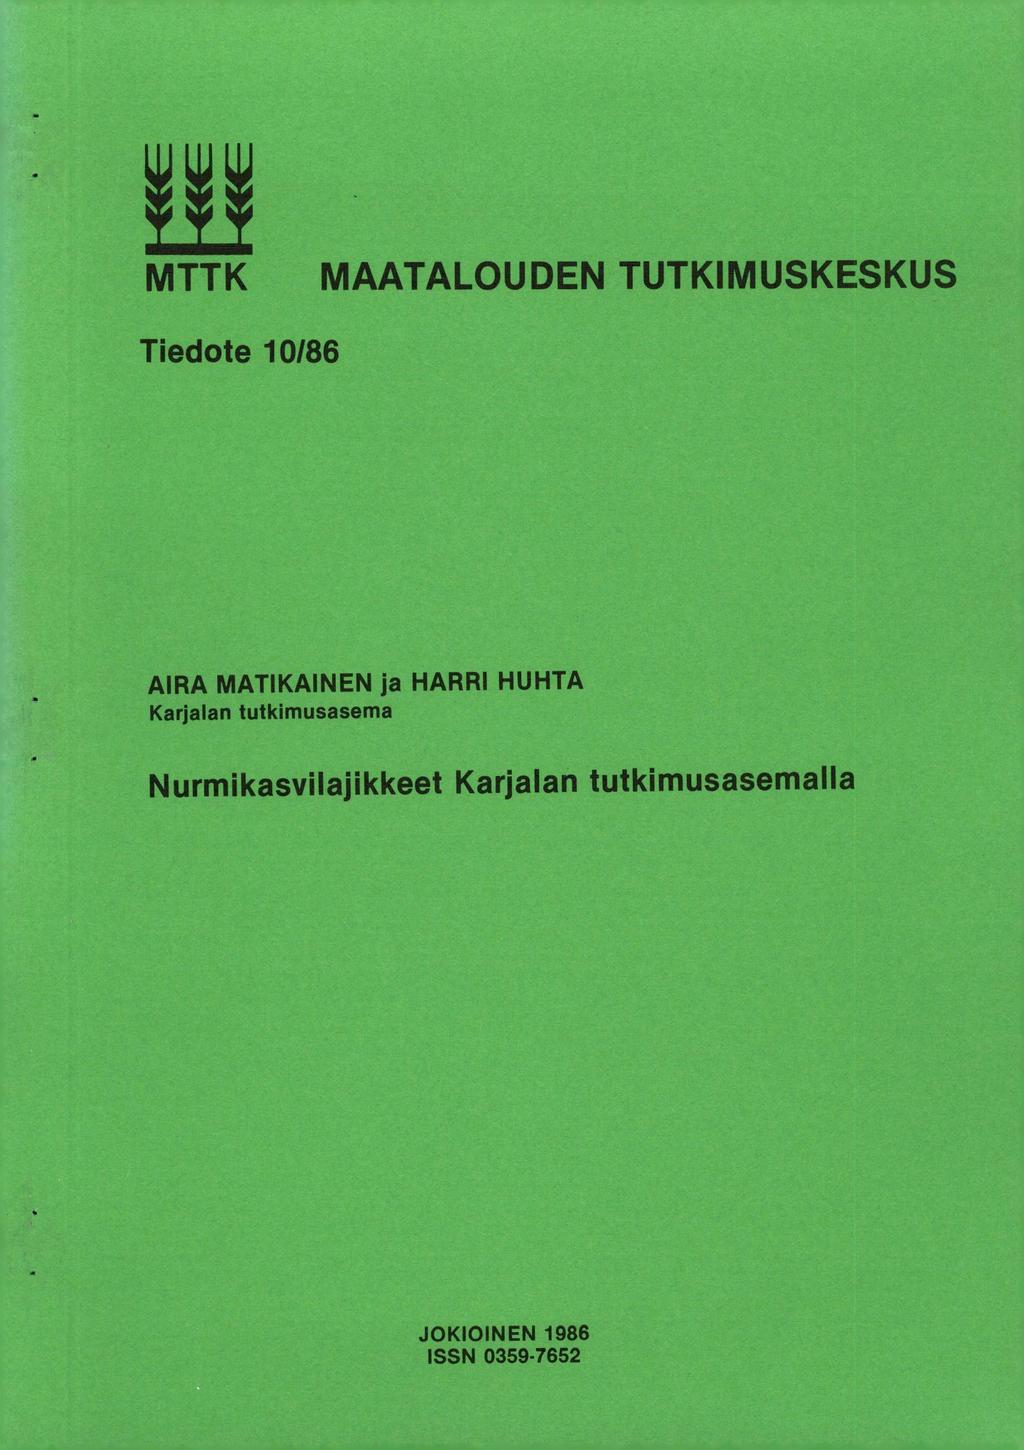 MTTK MAATALOUDEN TUTKIMUSKESKUS Tiedote 10/86 AIRA MATIKAINEN ja HARRI HUHTA Karjalan